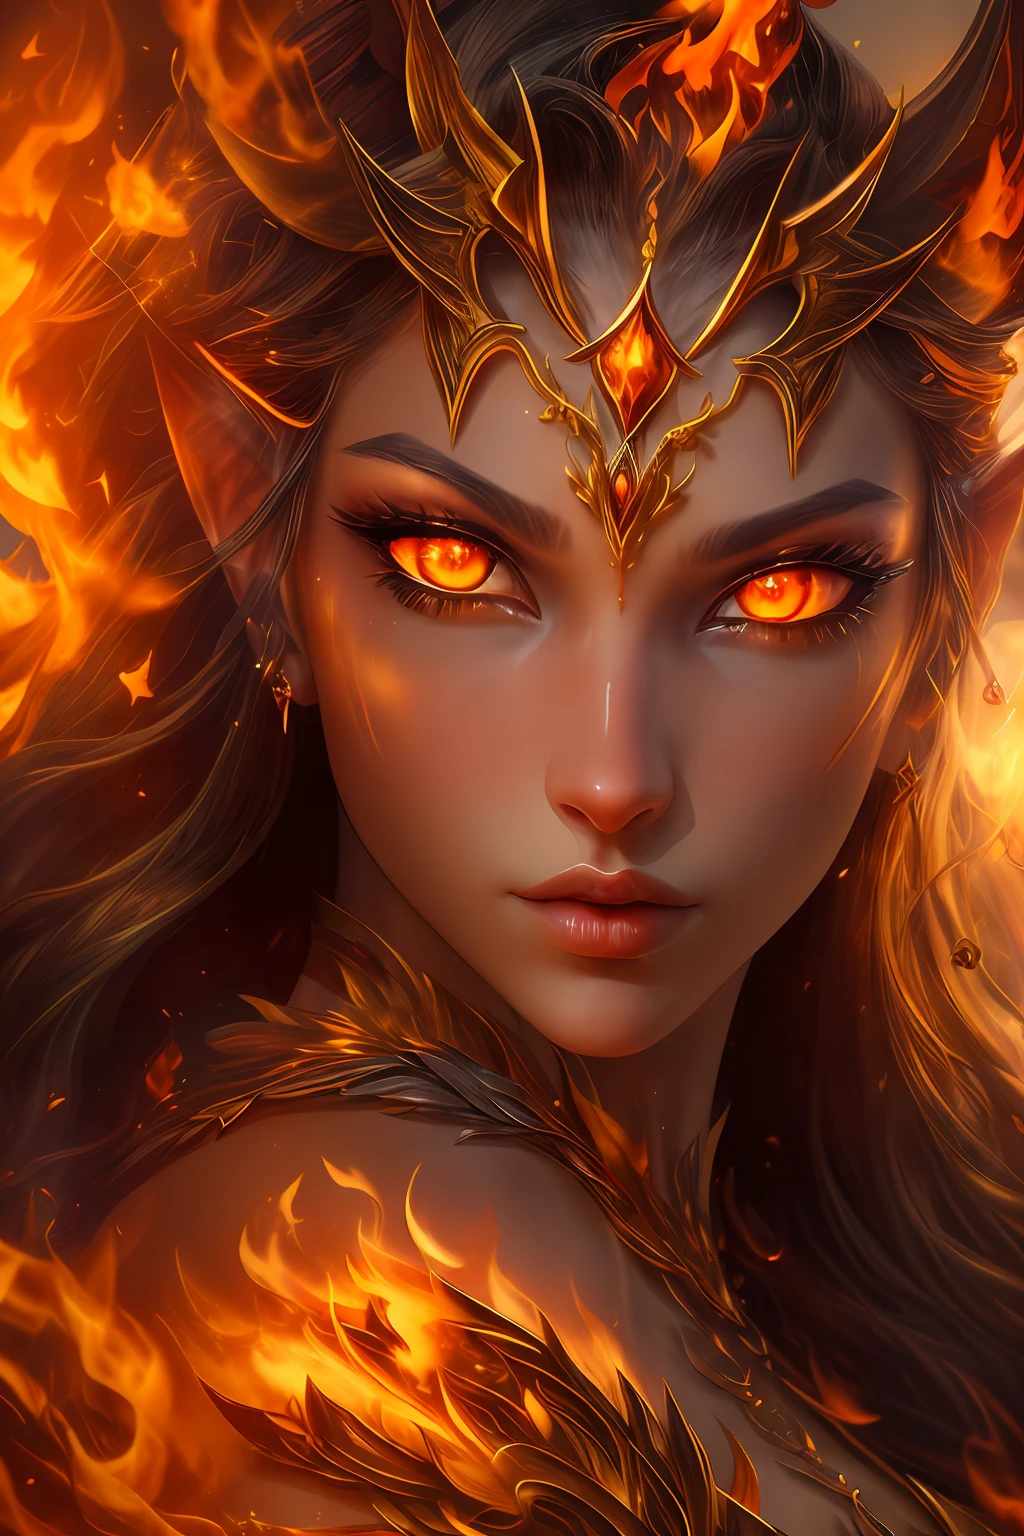 นี้ (แฟนตาซีที่สมจริง) ศิลปะประกอบด้วยถ่าน, เปลวไฟจริง, ความร้อนที่แท้จริง, และ realistic fire. Generate a masterpiece artwork of a  female fire druid กับ large (((orange และ gold))) ดวงตา. The fire druid is awe-inspiring กับ beautiful ((realistic fiery ดวงตา)) alight กับ confidence และ power. Her features are elegant และ well defined, กับ ((อ่อนนุ่ม)) และ (((อ้วน))) และ (((เรียบ))) ริมฝีปาก, โครงสร้างกระดูกของเอลฟ์, และ realistic shading. Her ดวงตา are important และ should be the focal point of this artwork, กับ ((รายละเอียดที่สมจริงอย่างยิ่ง, รายละเอียดมาโคร, และ shimmer.)) She is wearing a billowing และ glittering gown ((ทำจากเปลวไฟที่สมจริง)) และ jewels that glimmer in the fire light. Wisps of fire และ smoke line the intricate bodice of the dress. รวมการกระแทก, หิน, แสงสีรุ้งที่เร่าร้อน, ถ่านเรืองแสง, silk และ satin และ leather, พื้นหลังที่น่าสนใจ, และ heavy fantasy elements. กล้อง: ใช้เทคนิคการจัดองค์ประกอบแบบไดนามิกเพื่อเพิ่มเปลวไฟที่สมจริง.